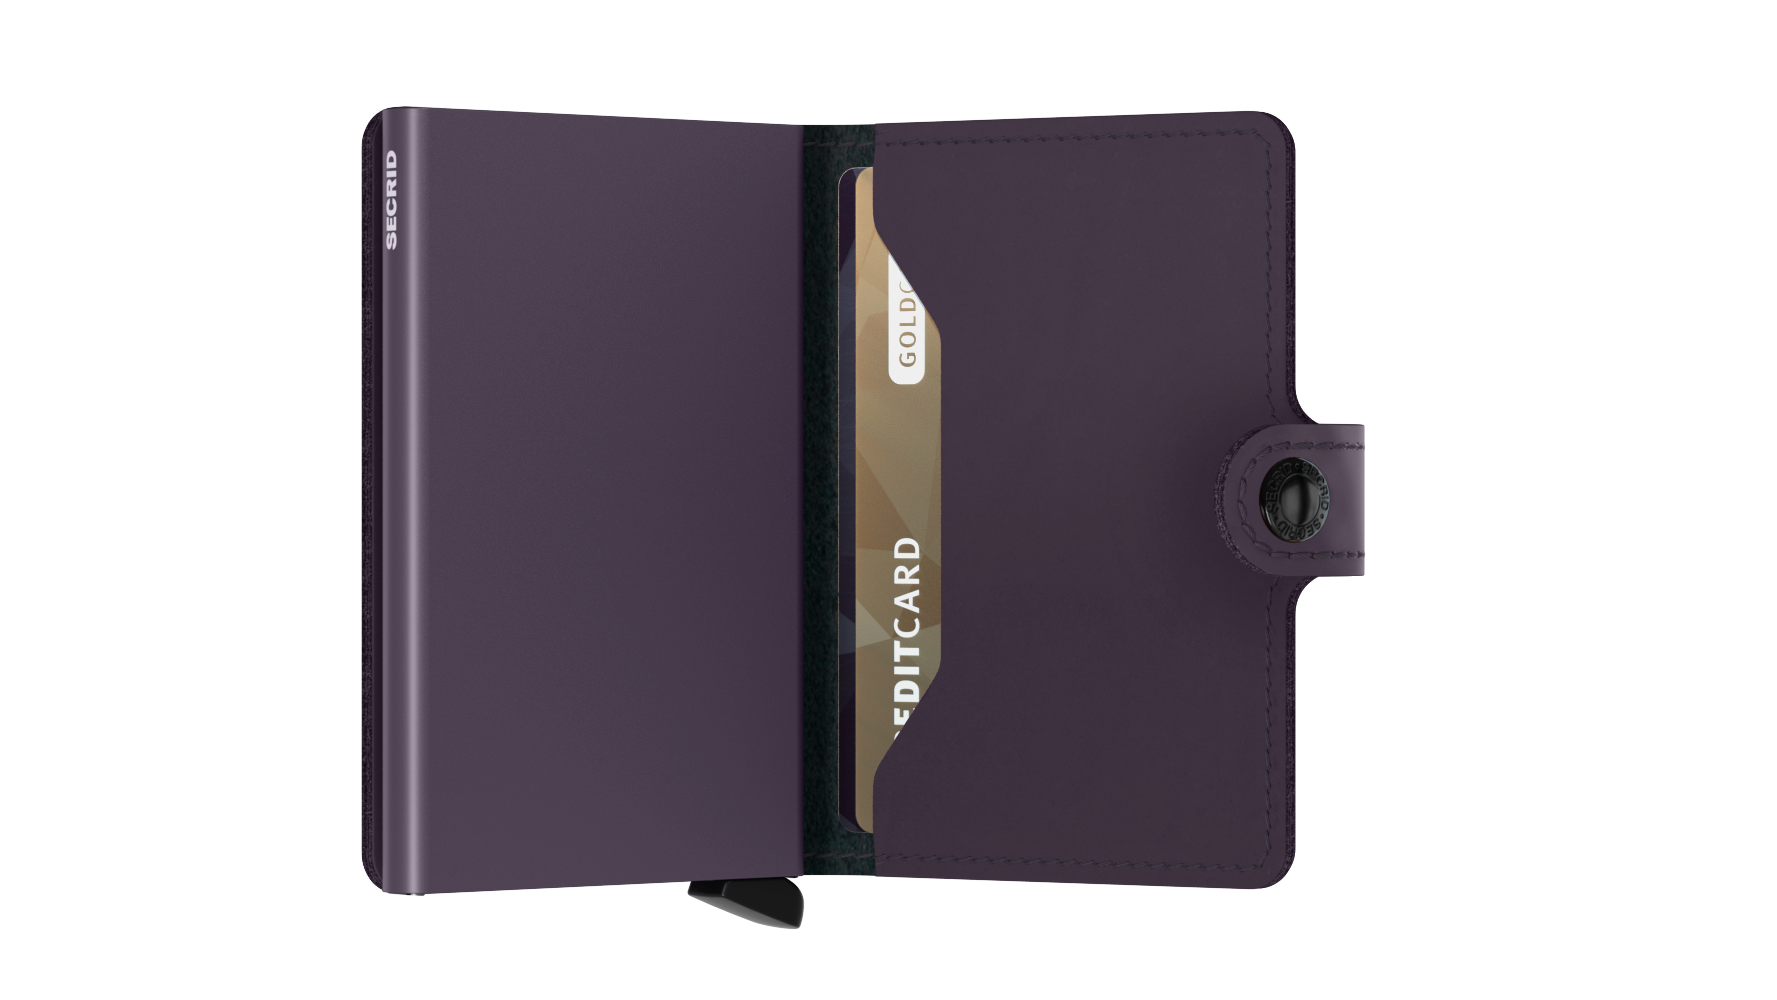 Secrid Miniwallet matte dark purple